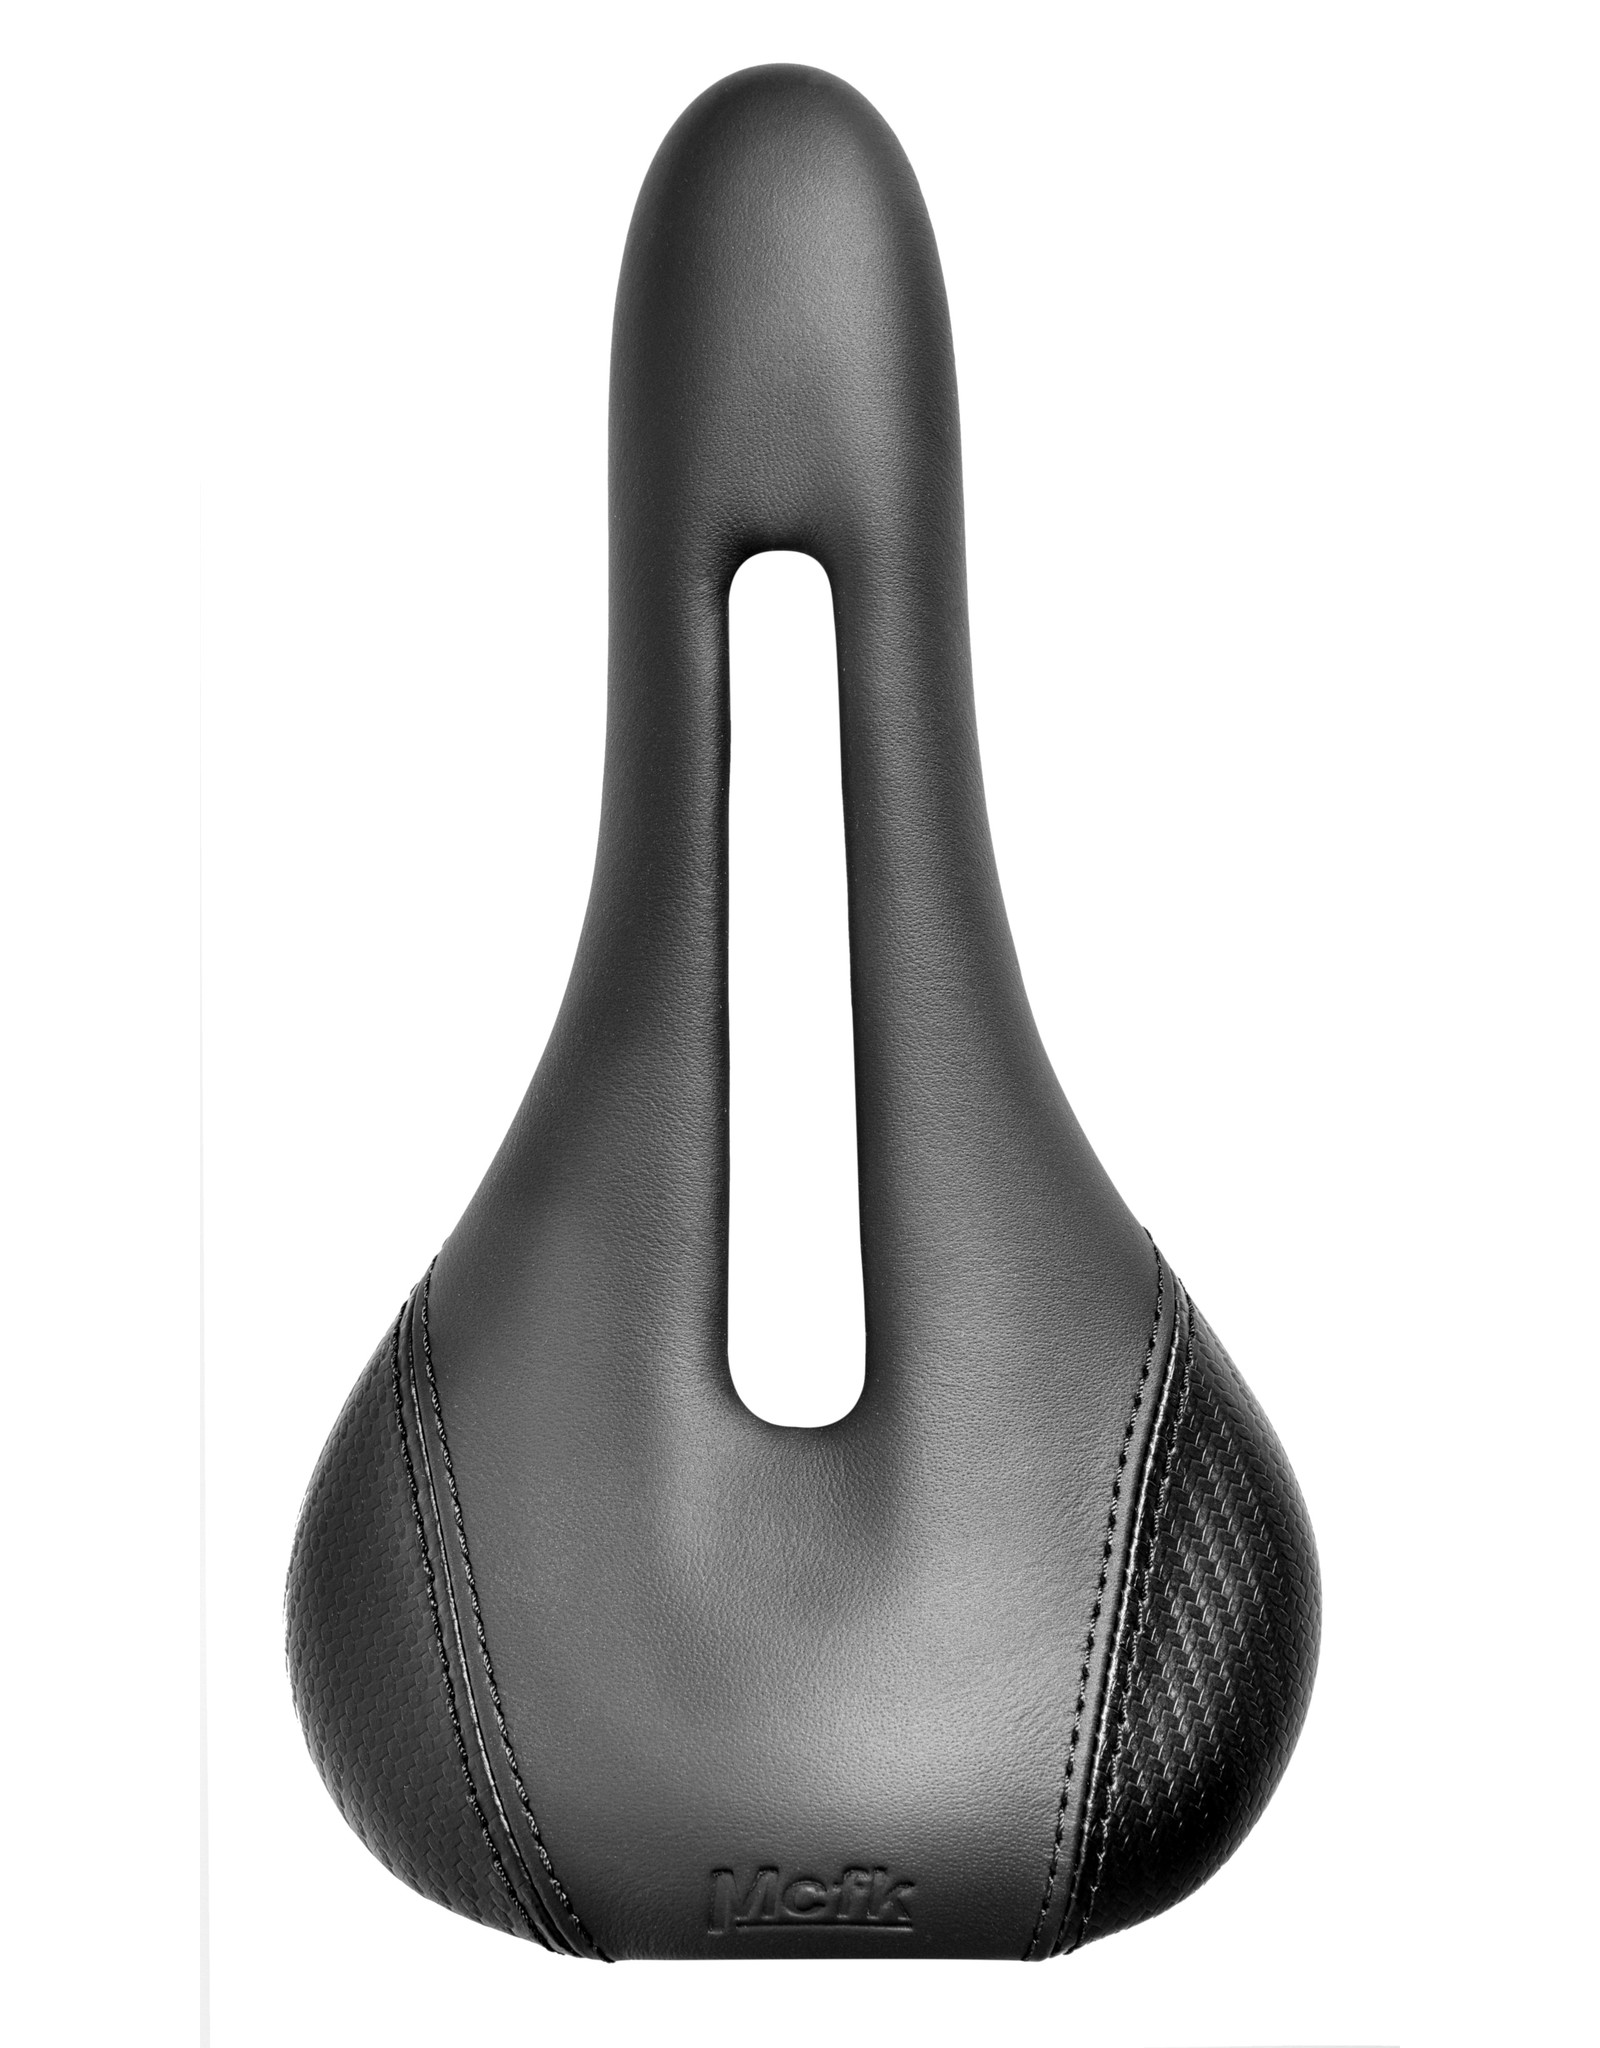 Mcfk Mcfk Open Leather Carbon Saddle